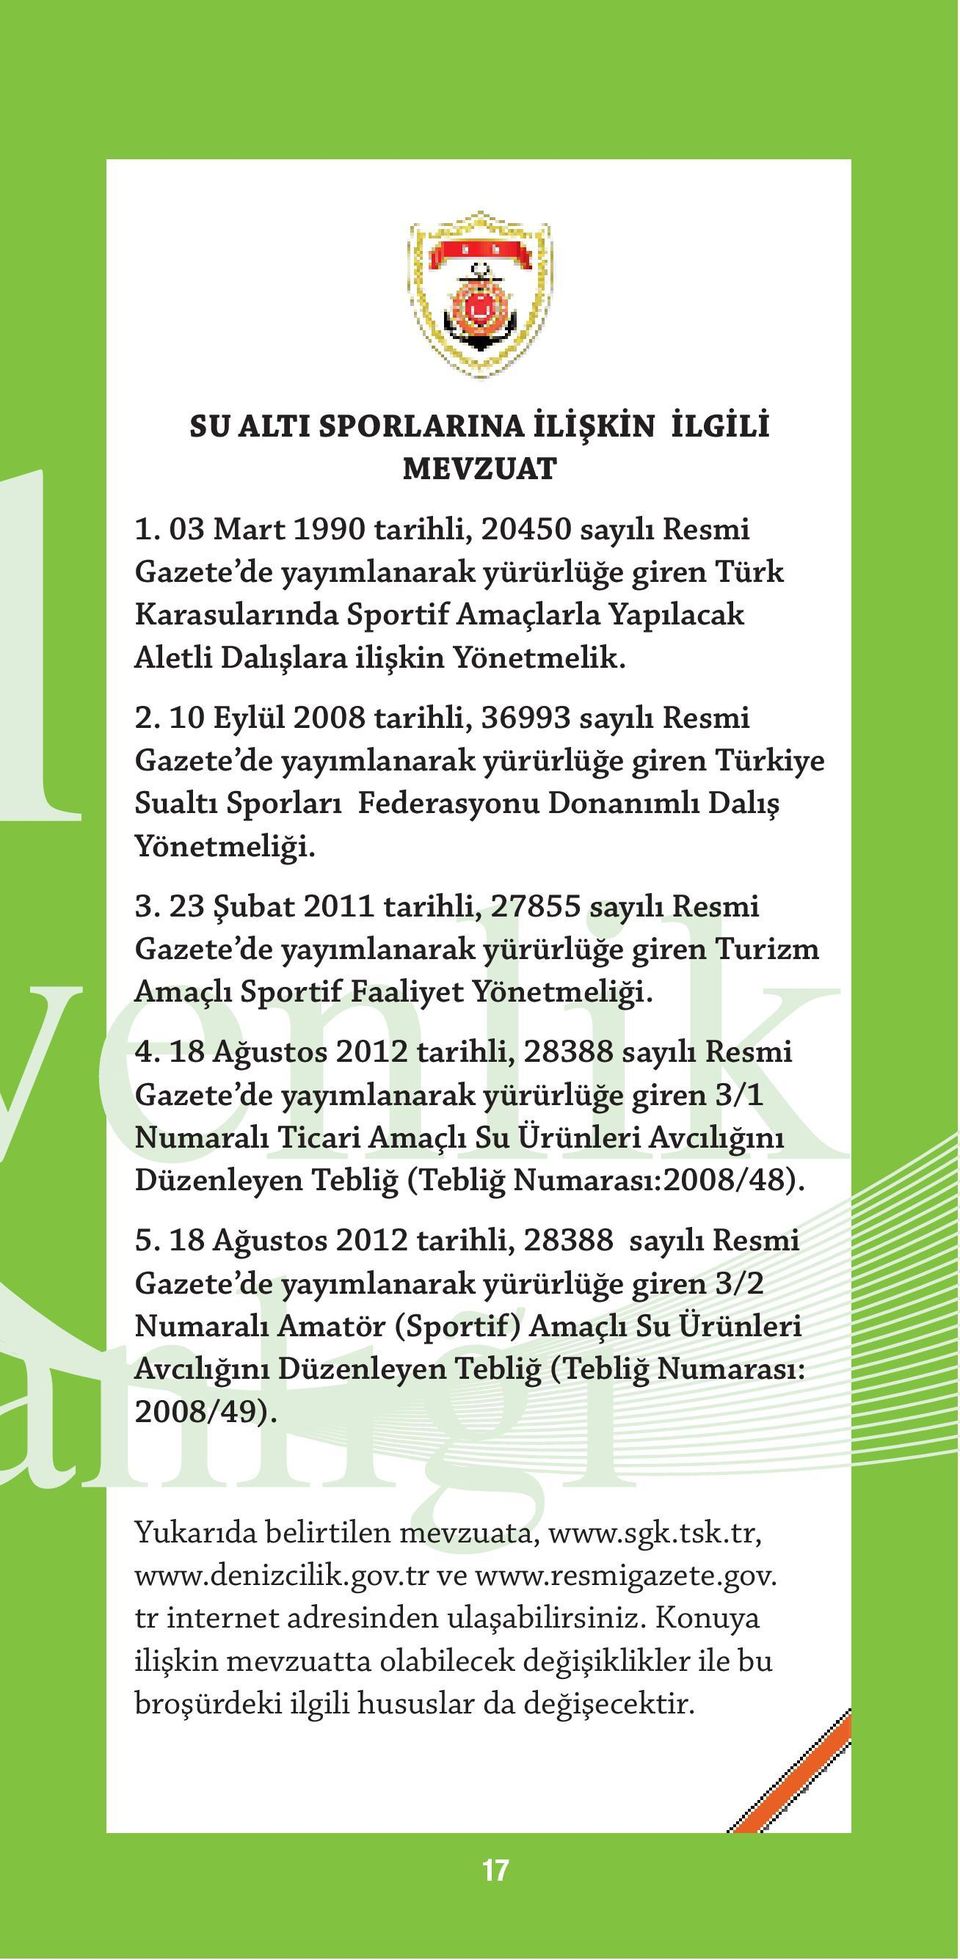 3. 23 Şubat 2011 tarihli, 27855 sayılı Resmi Gazete de yayımlanarak yürürlüğe giren Turizm Amaçlı Sportif Faaliyet Yönetmeliği. 4.